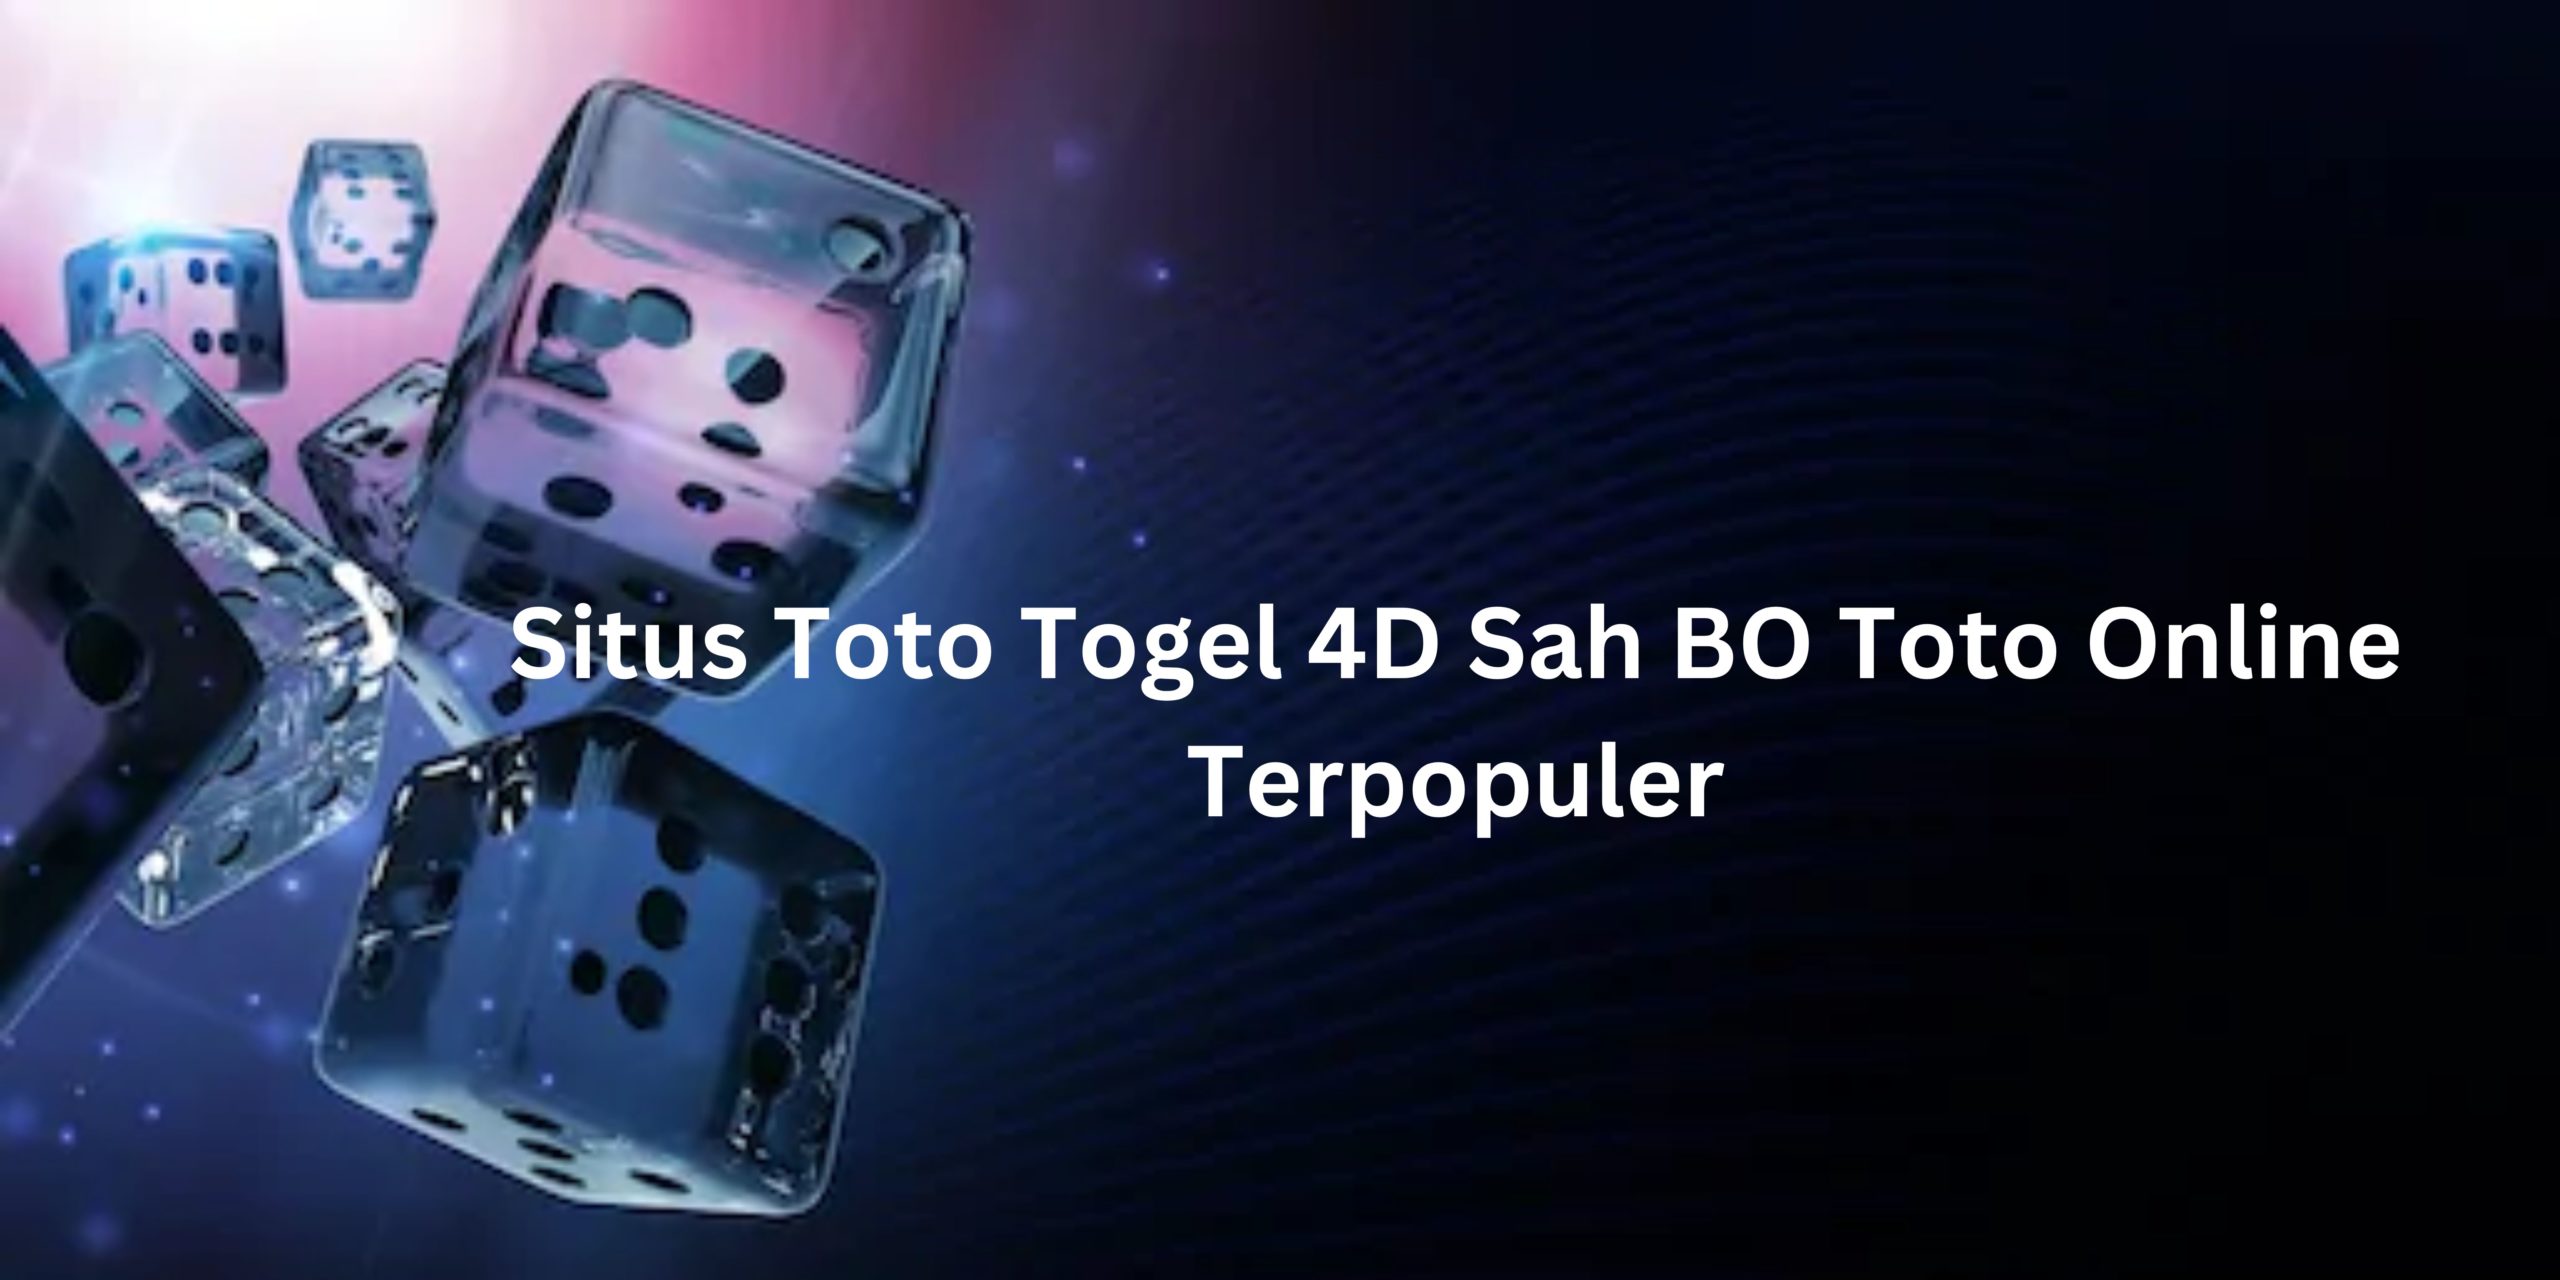 Situs Toto Togel 4D Sah BO Toto Online Terpopuler